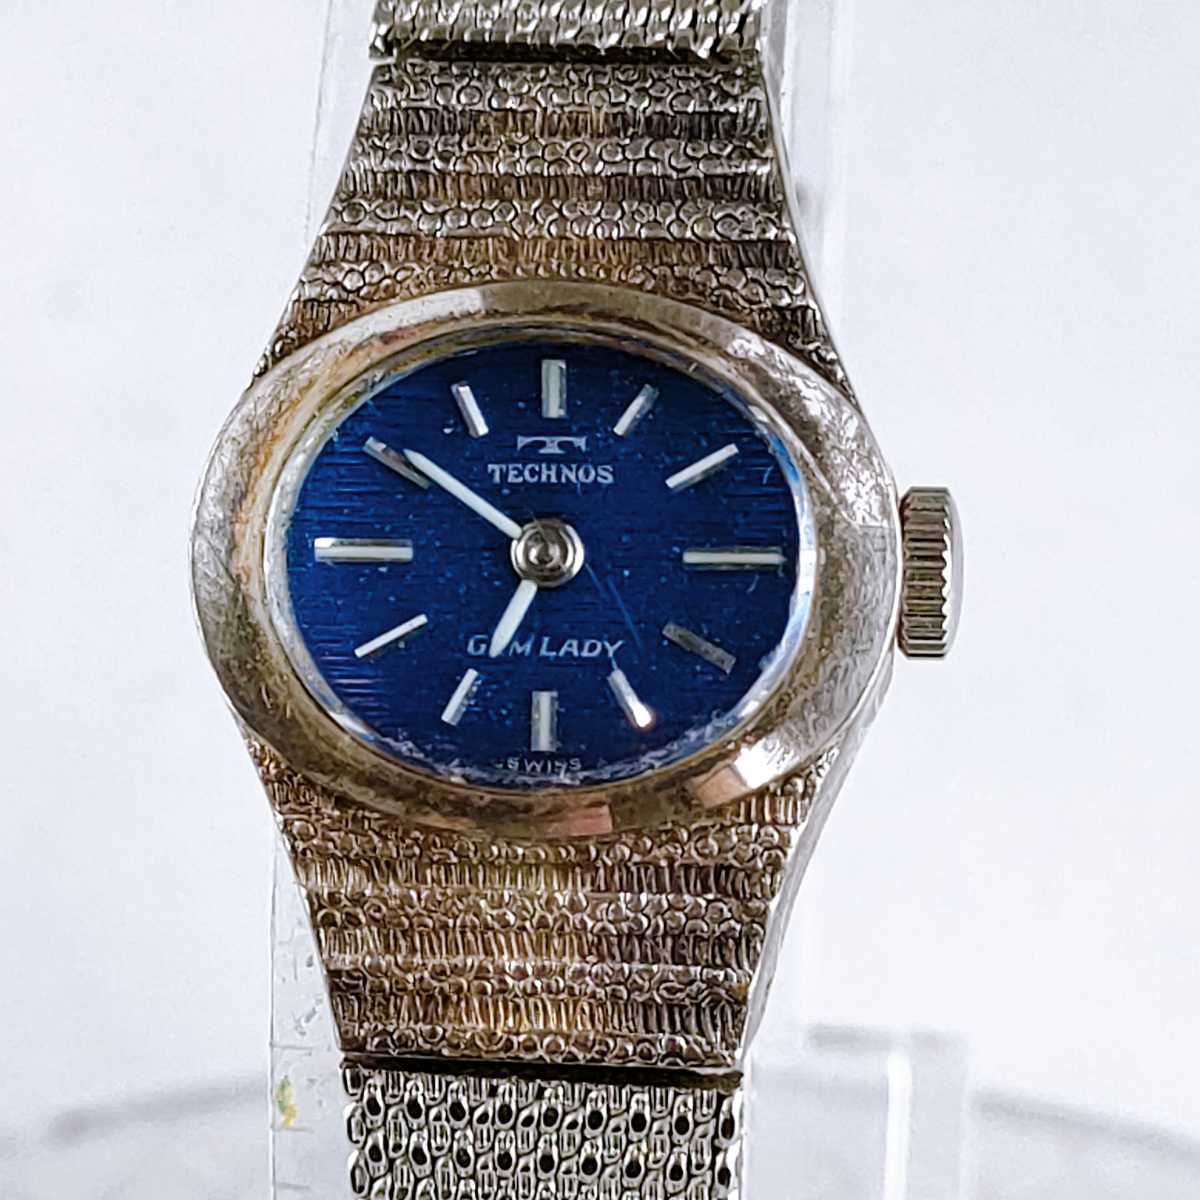 technos gemlady Tecnos наручные часы аналог Швейцария производства часы Vintage 2 стрелки синий циферблат аксессуары аксессуары античный retro 